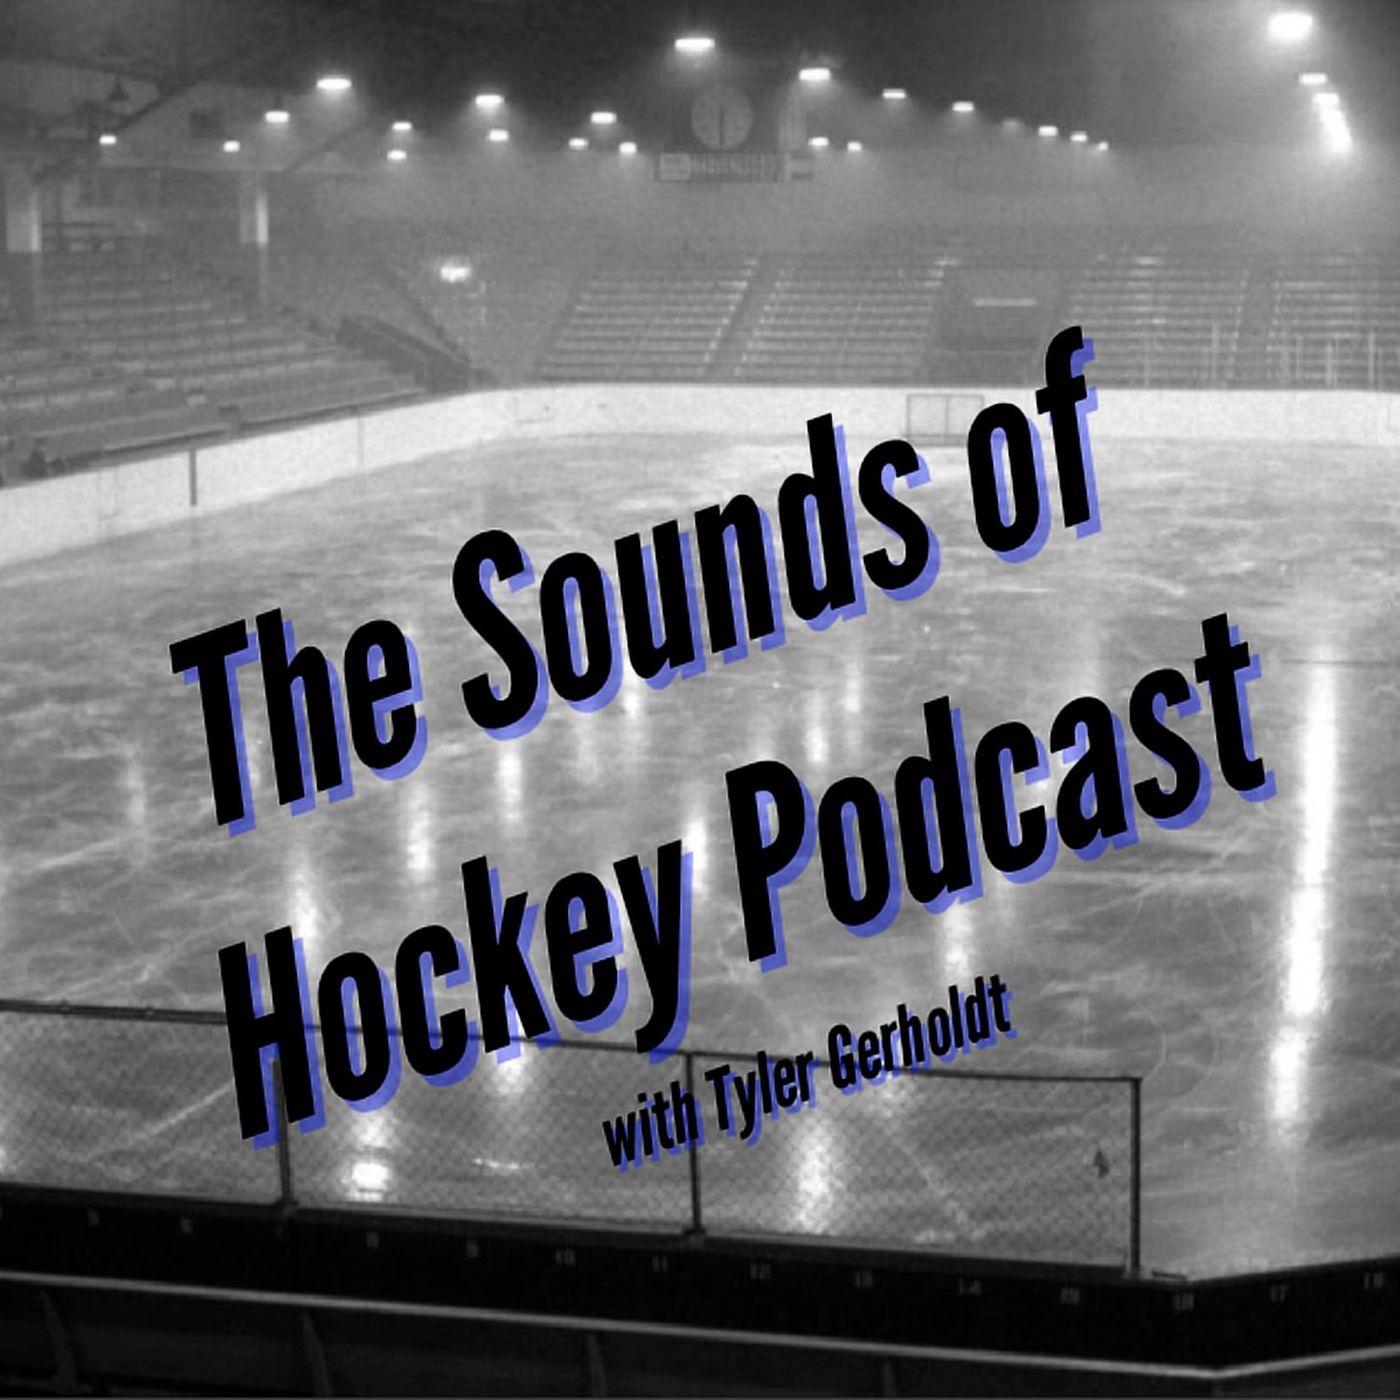 Sounds of Hockey